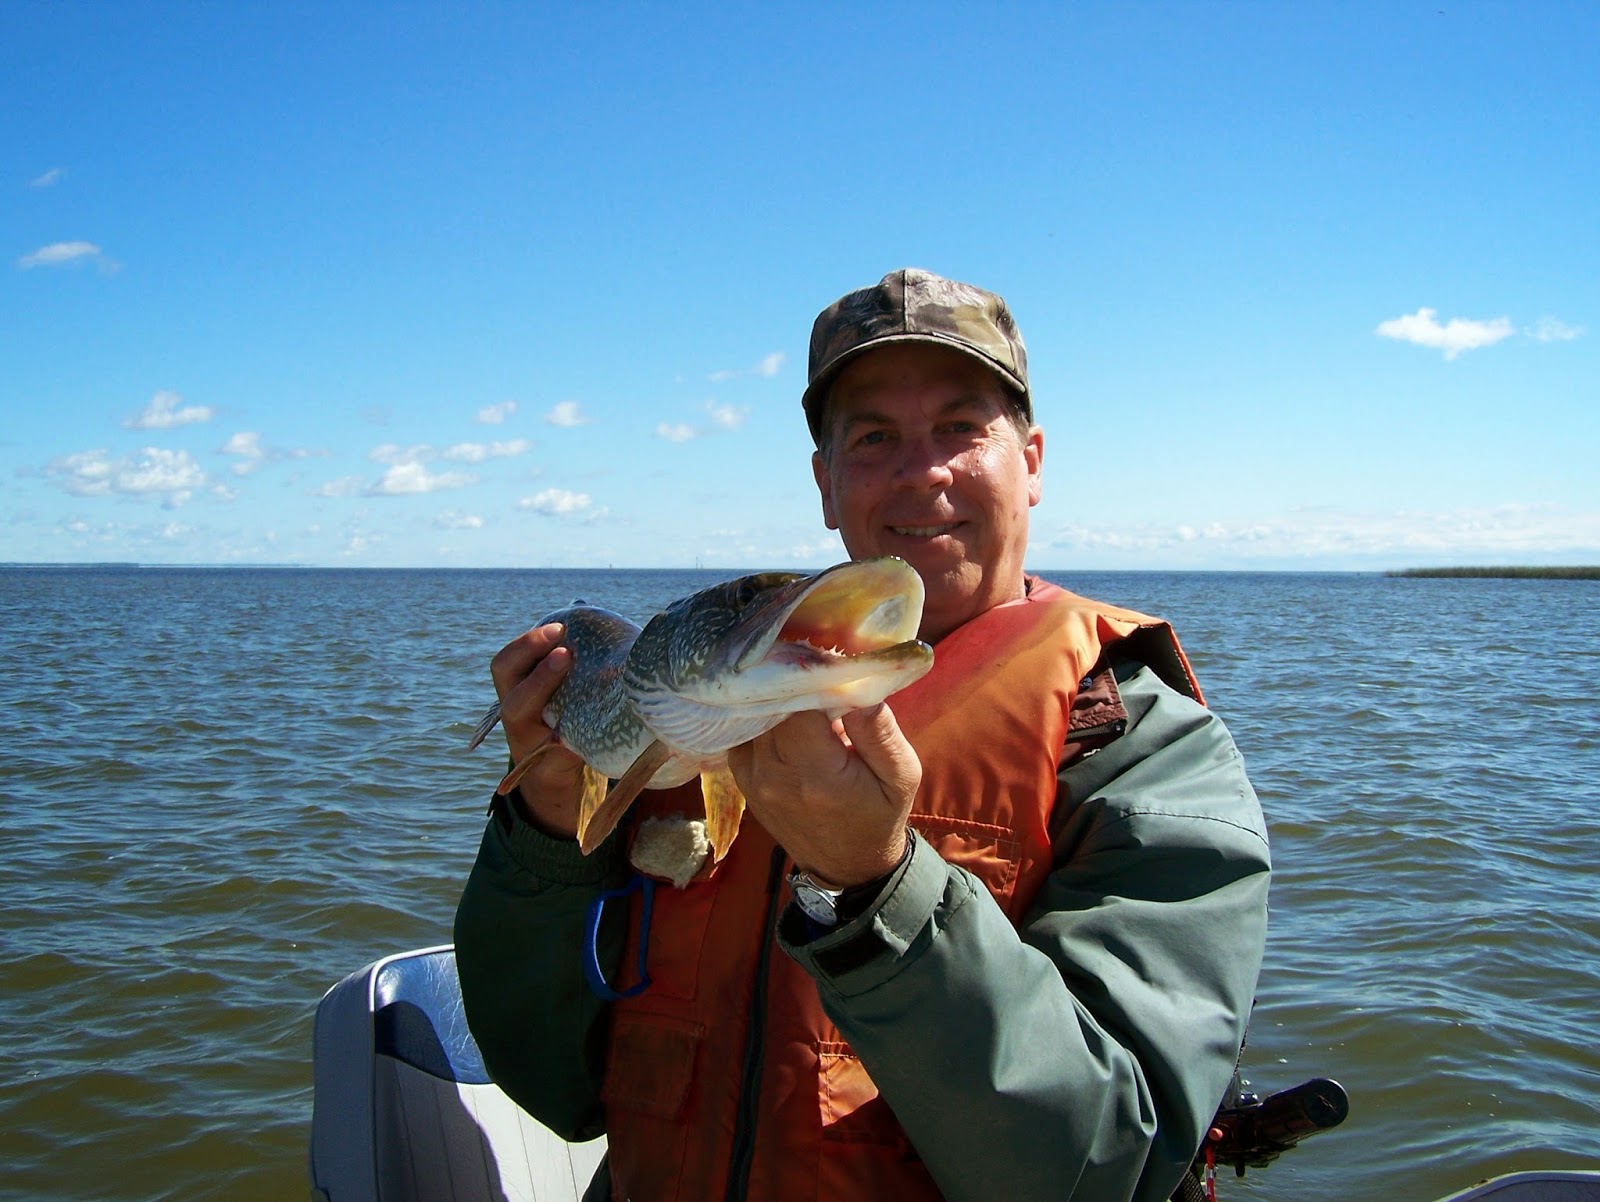 Pêche lac Saint-Pierre, Daniel Lefaivre, la pêche au Québec, blogueur de pêche, blogueur sur la pêche